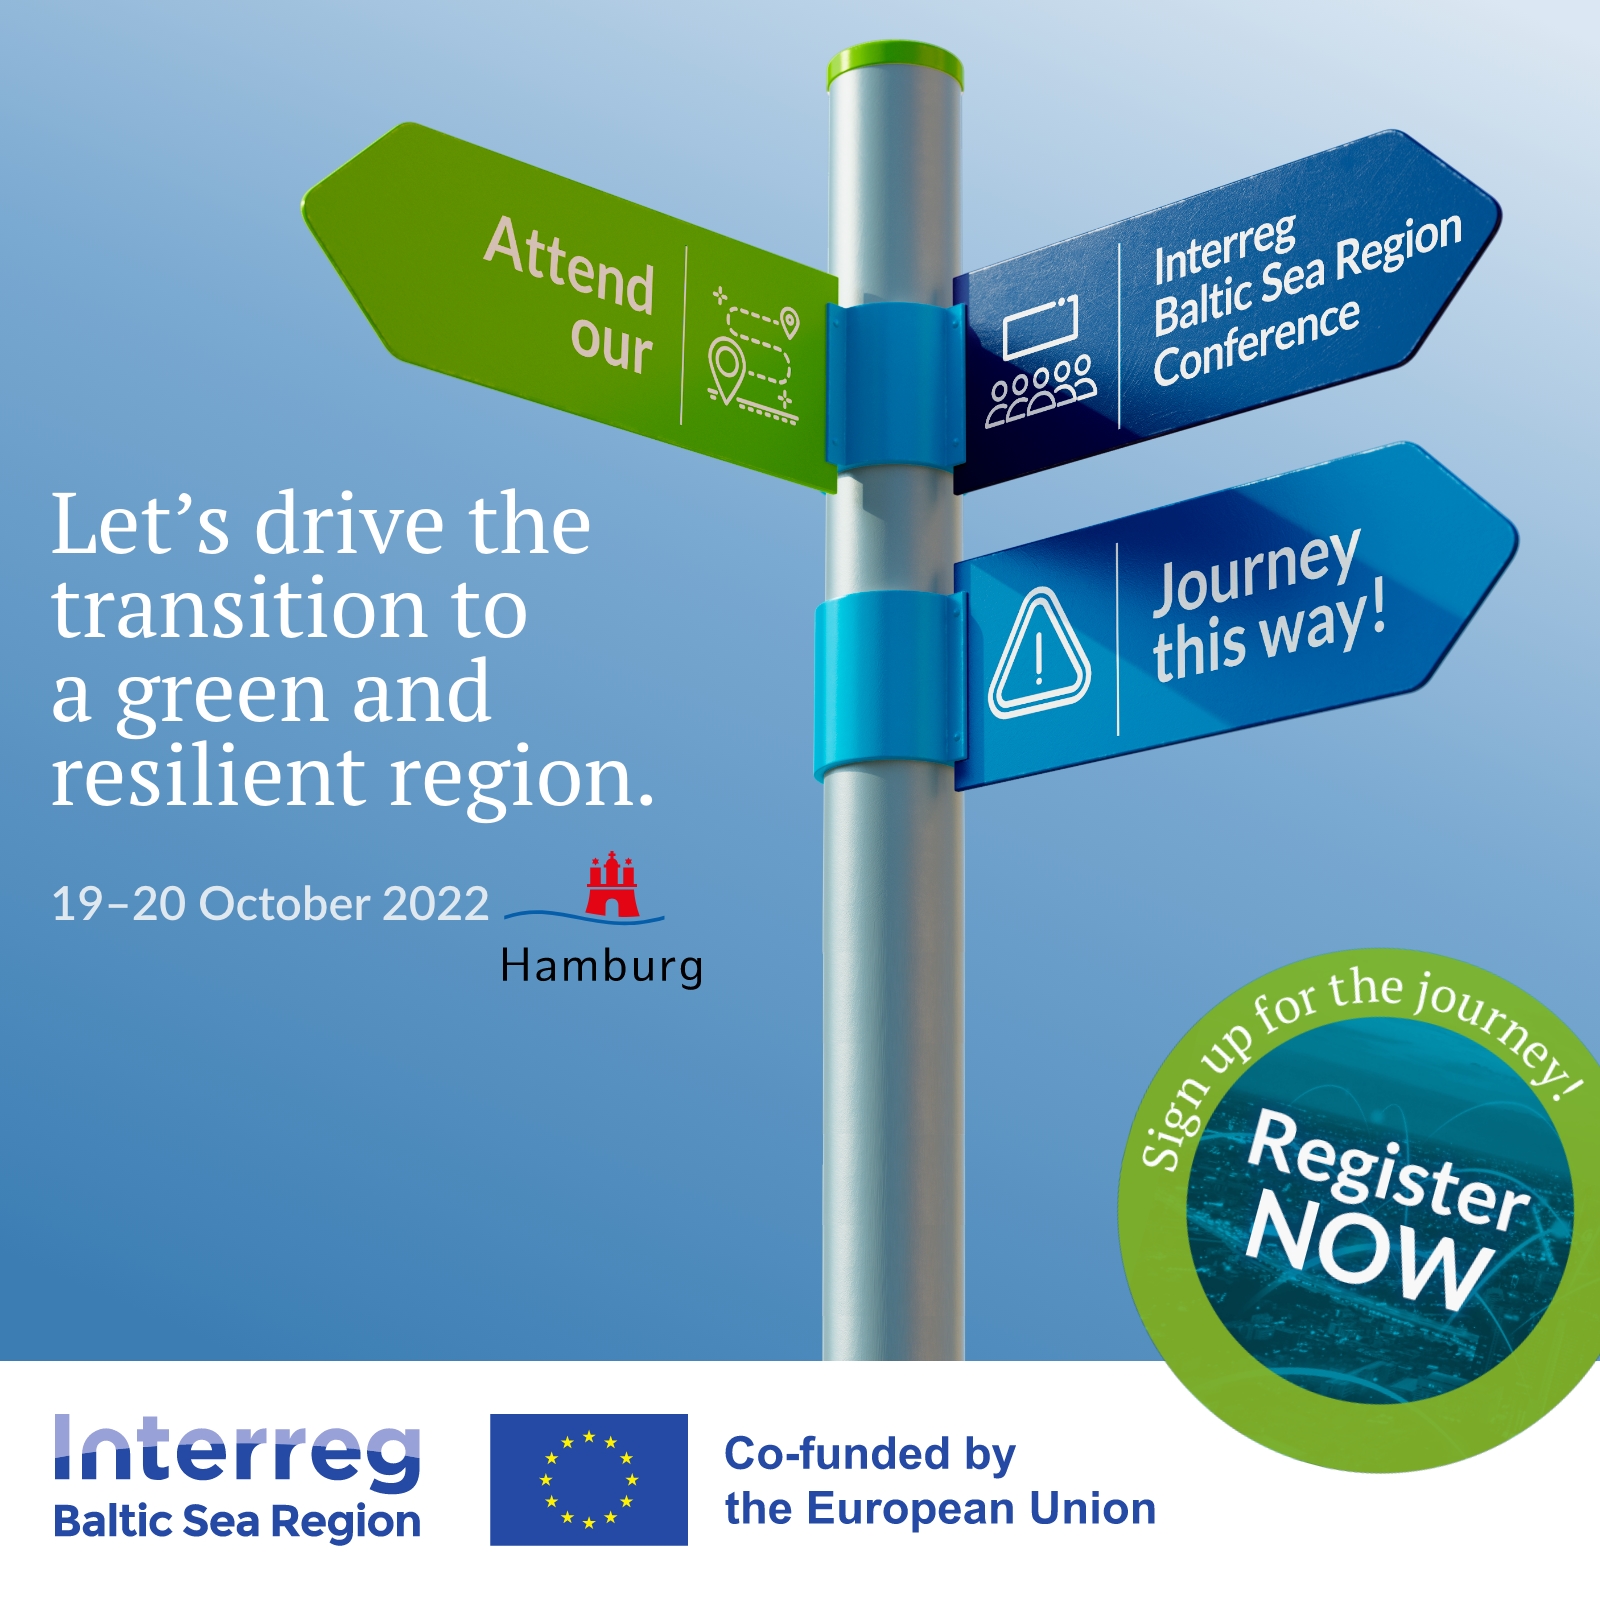 Reklama konferencja programu Interreg Region Morza Bałtyckiego